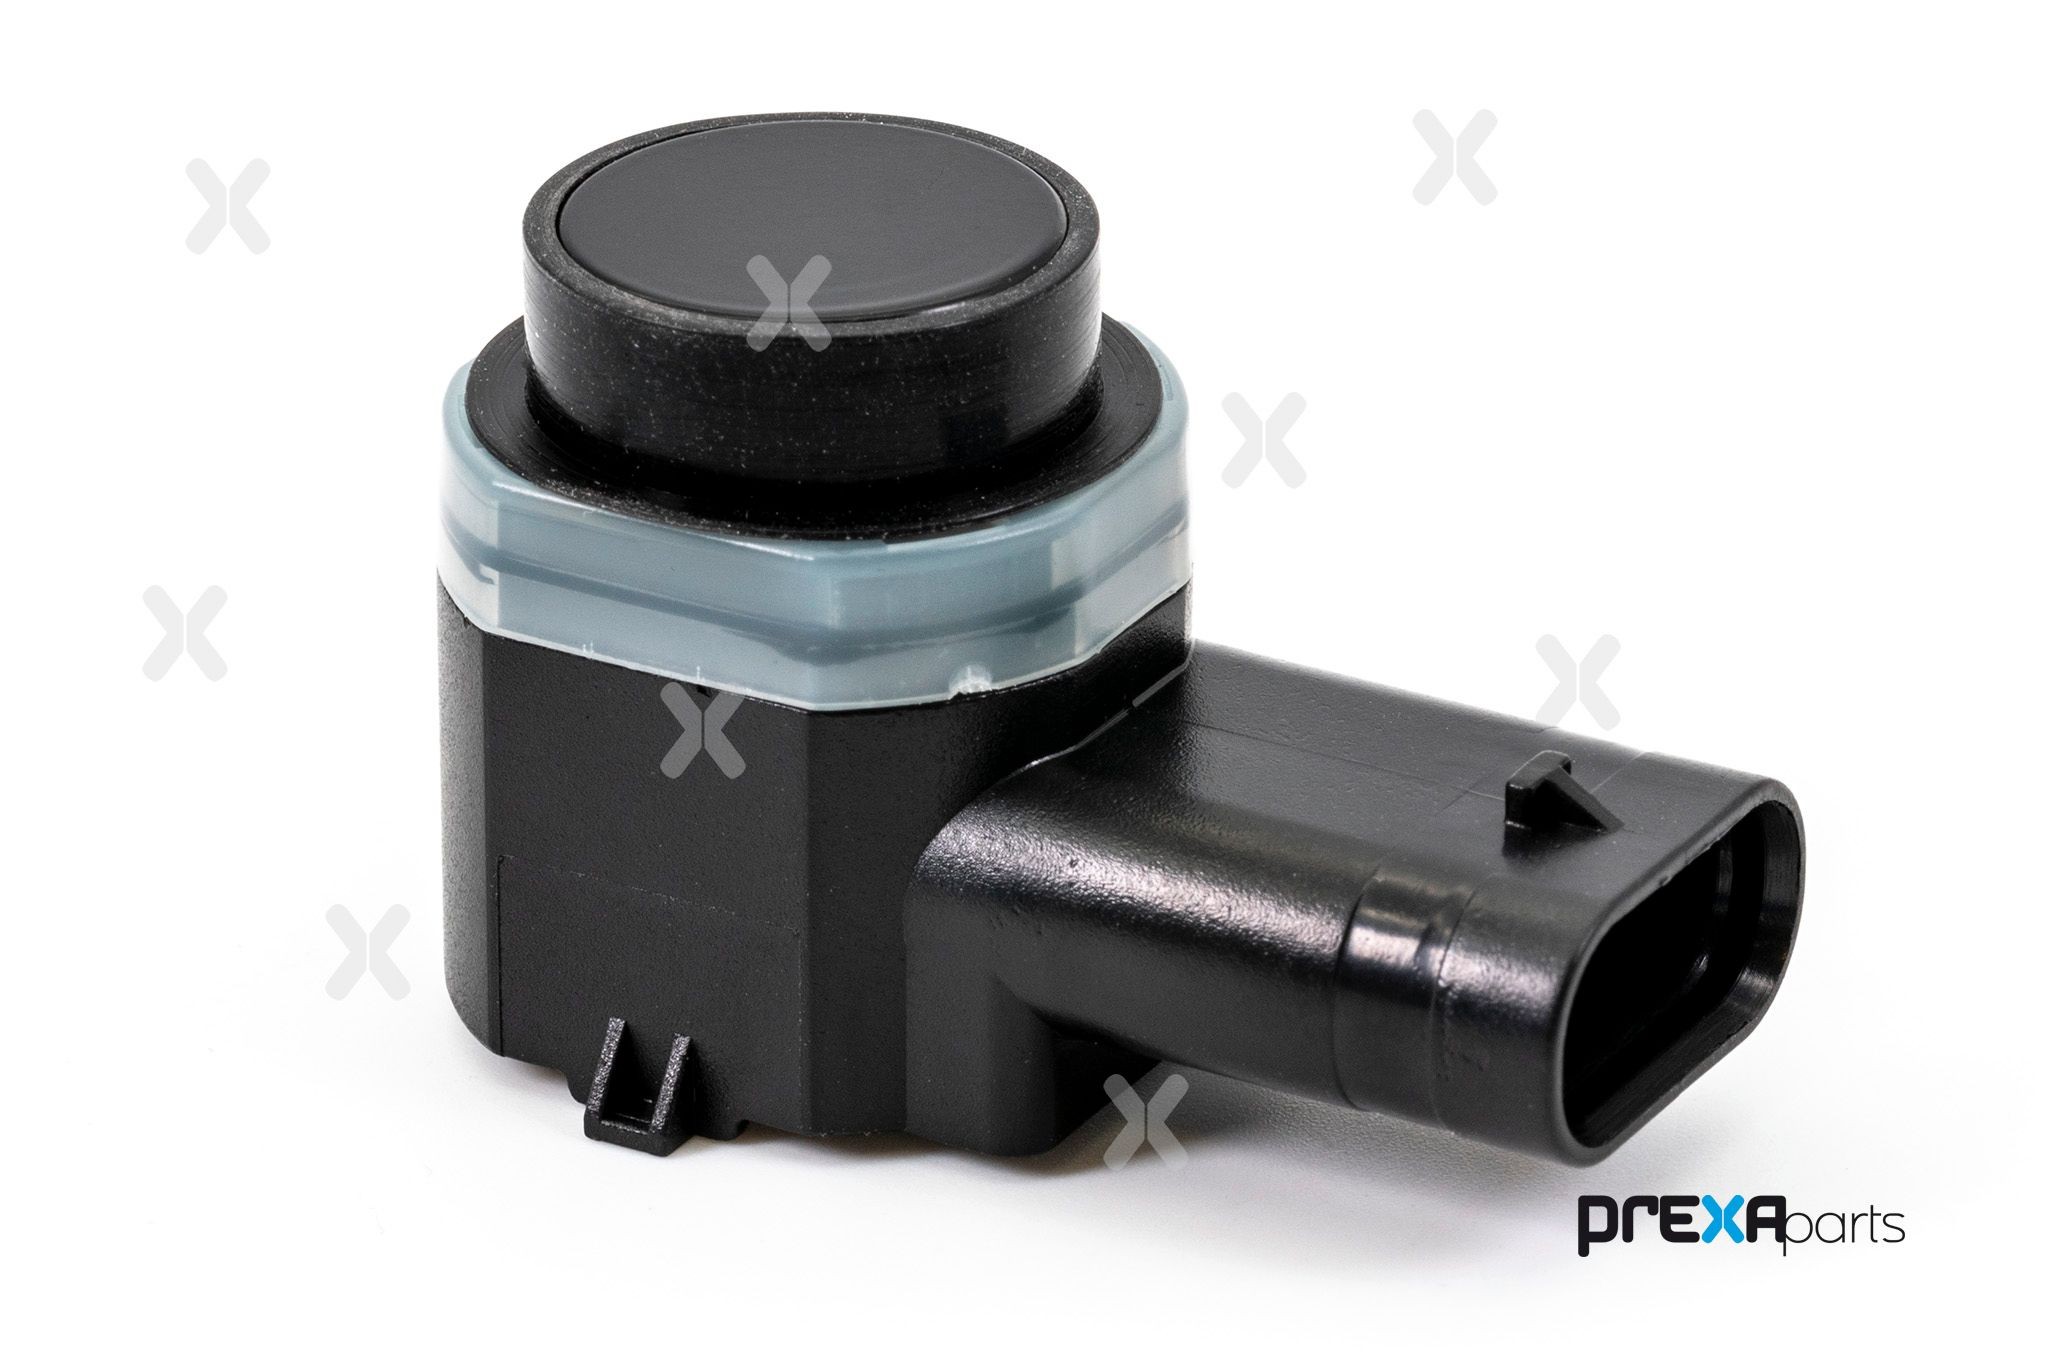 PREXAparts P103008 Parking sensor 89341-05010-C0